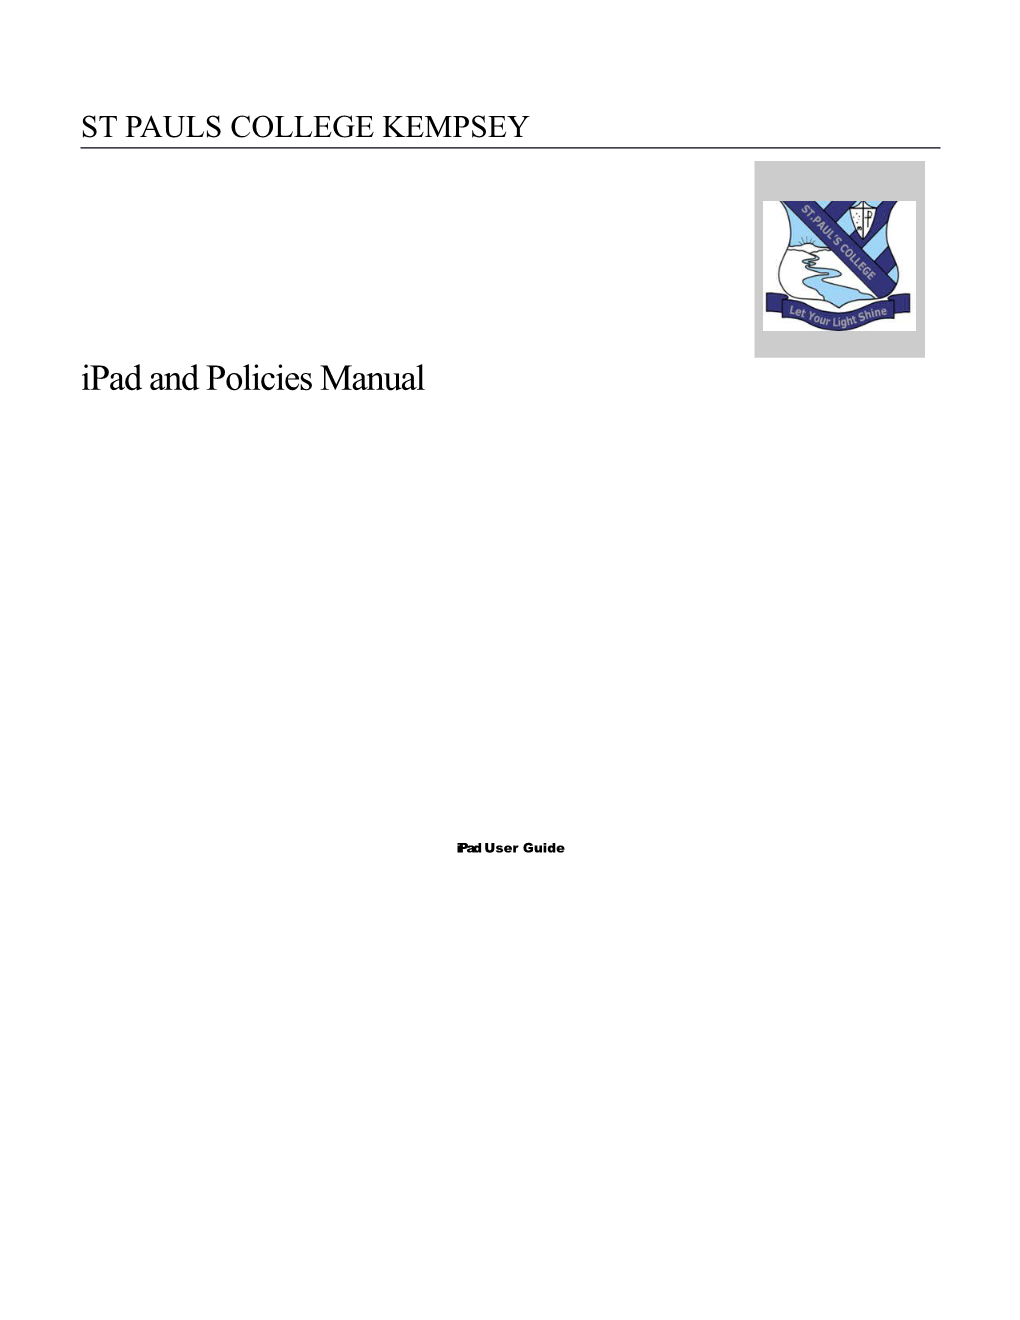 Ipad and Policies Manual